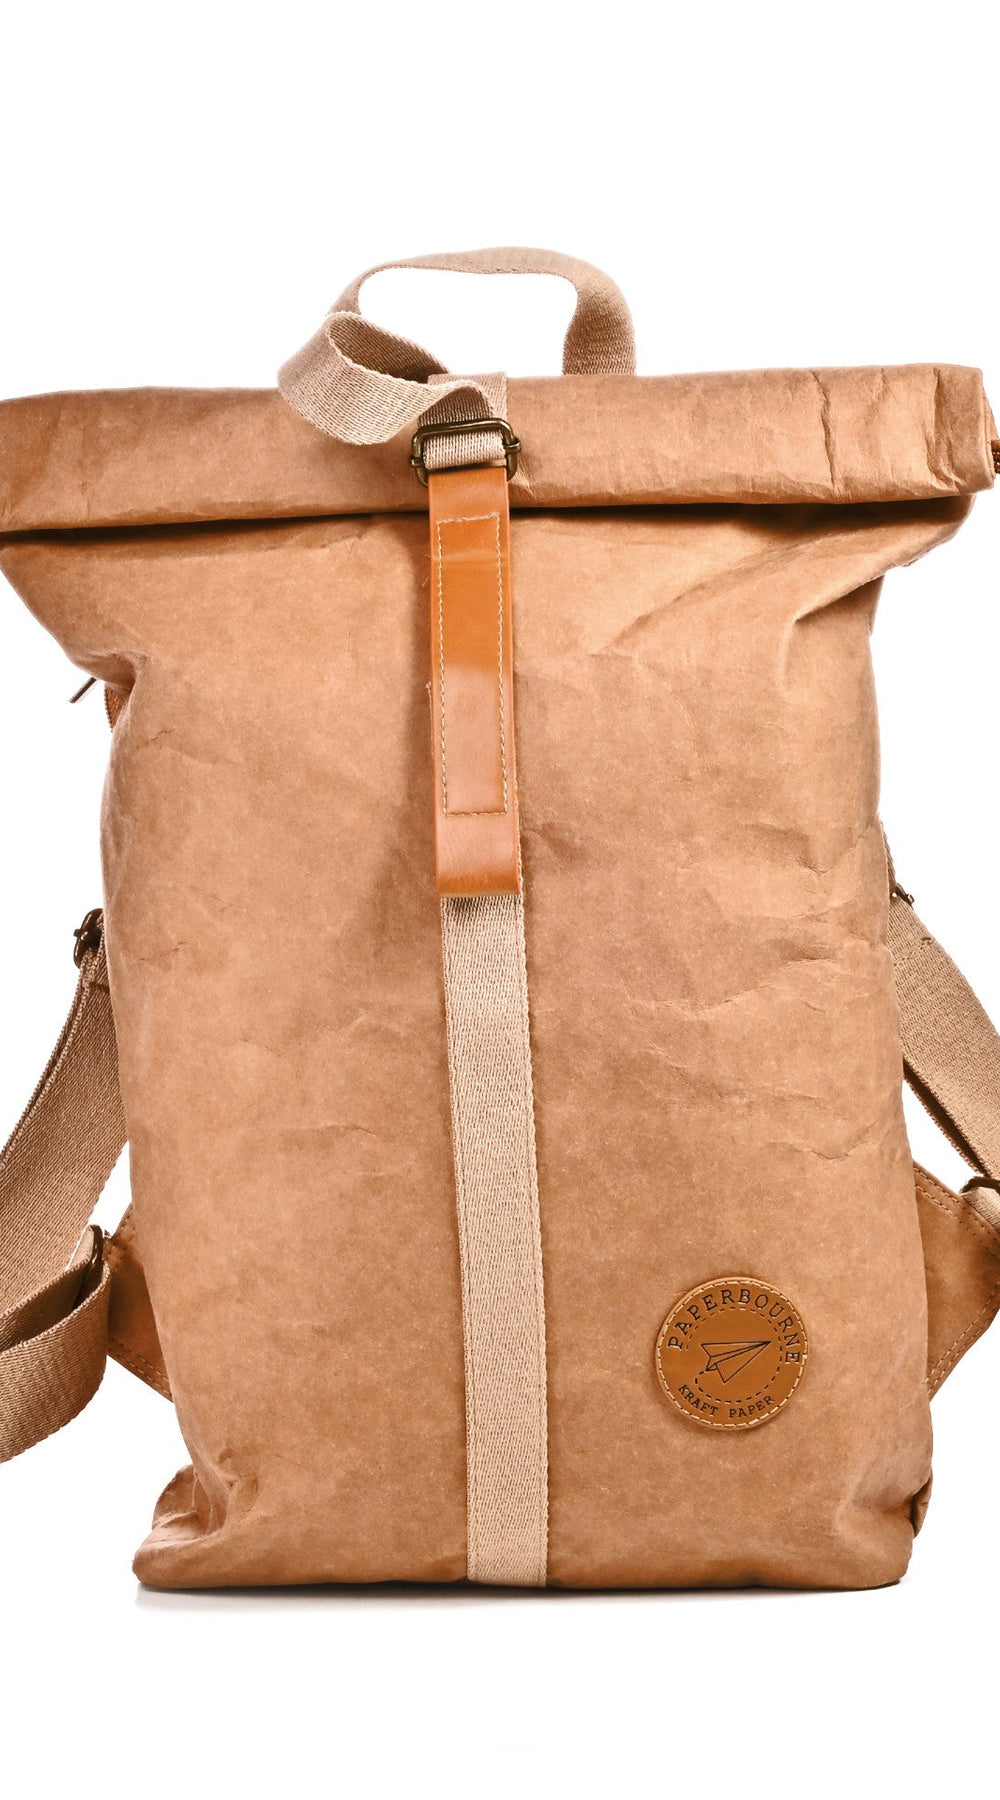 Atlas - kraft paper backpack